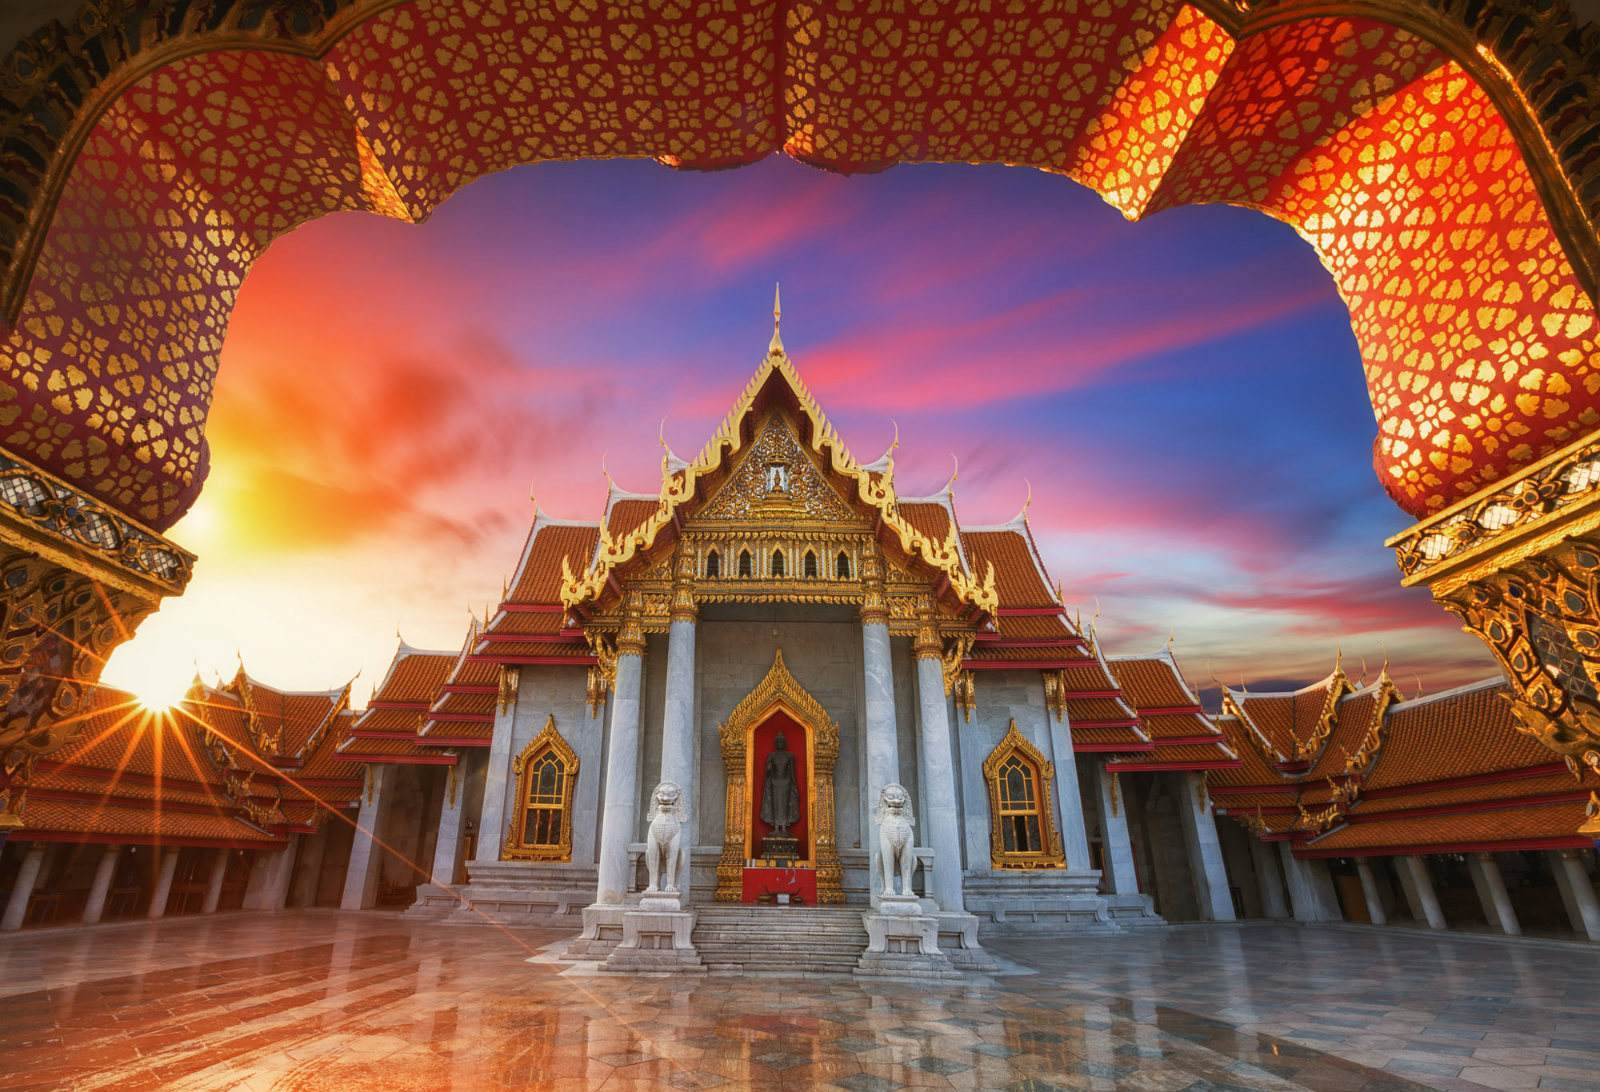 玉佛寺位于曼谷,是最著名的佛寺,受到人们的尊敬